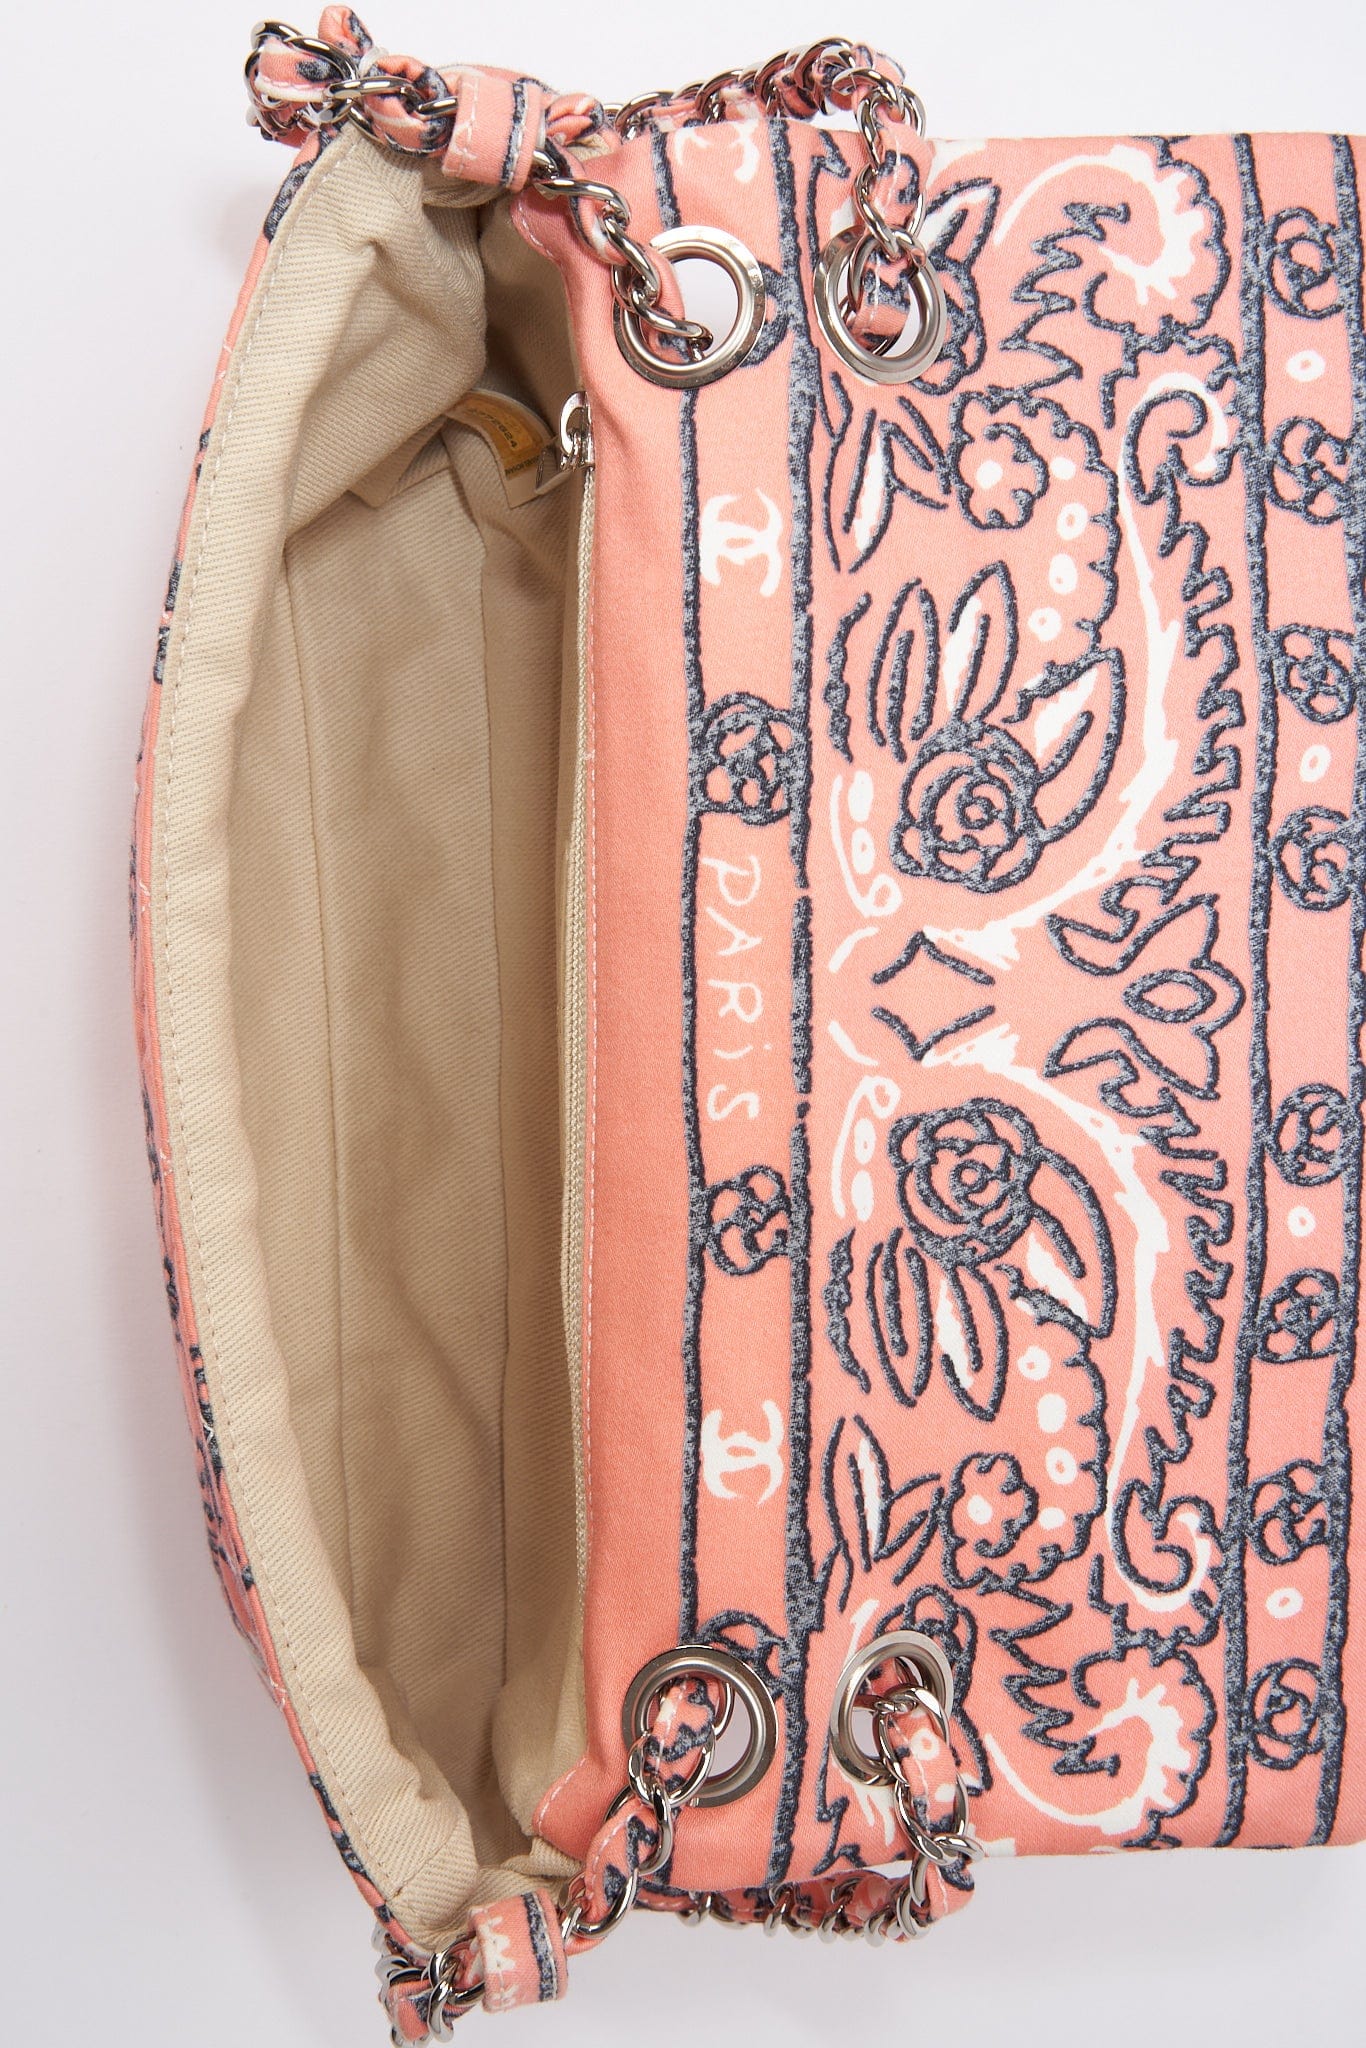 chanel shoulder bag pink